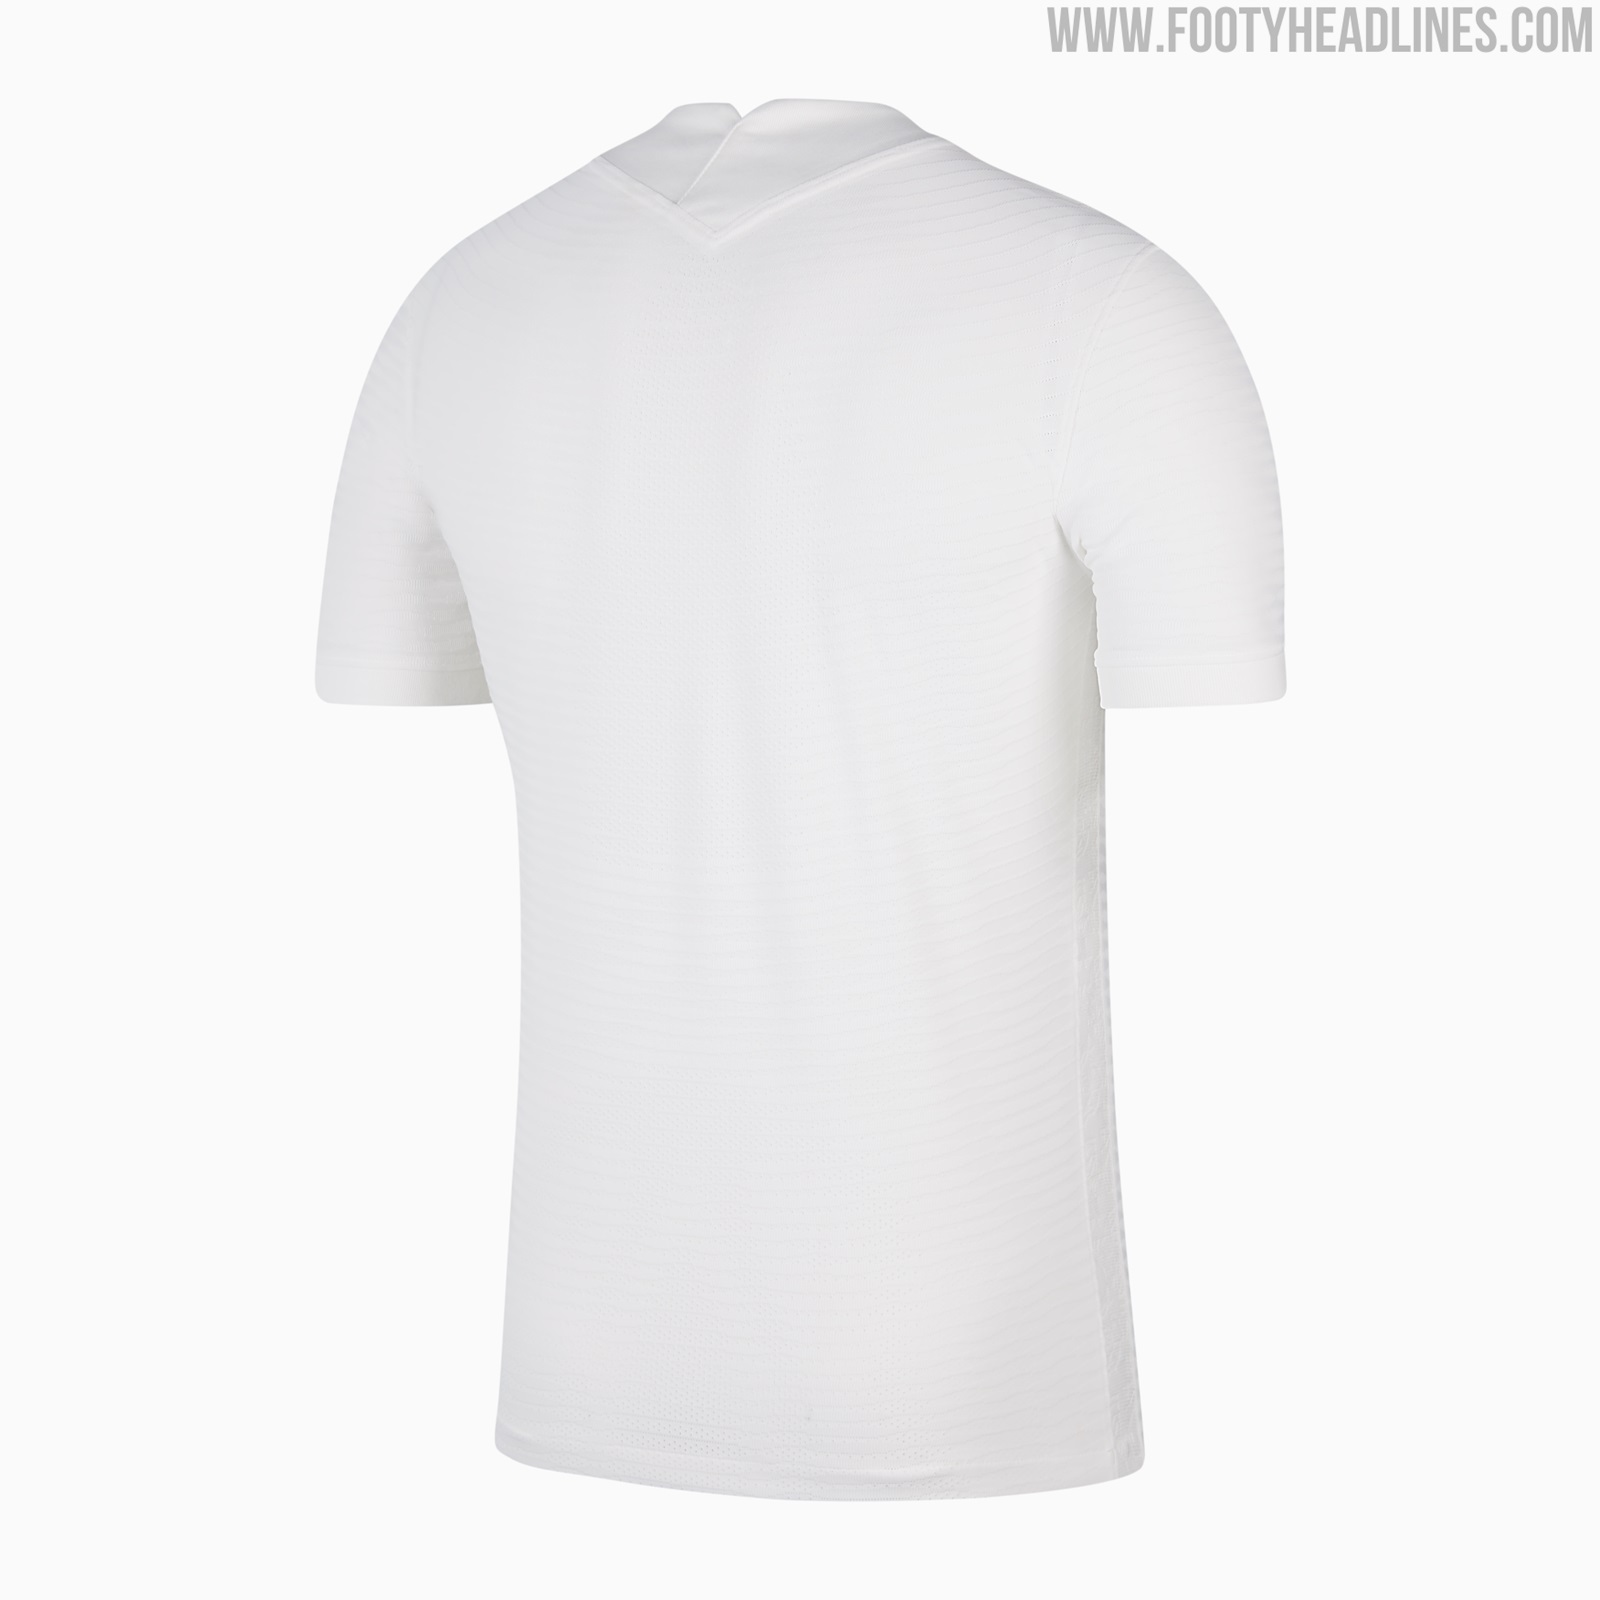 Nike 2021-22 Tottenham Hotspur Third Kit Leaked » The Kitman